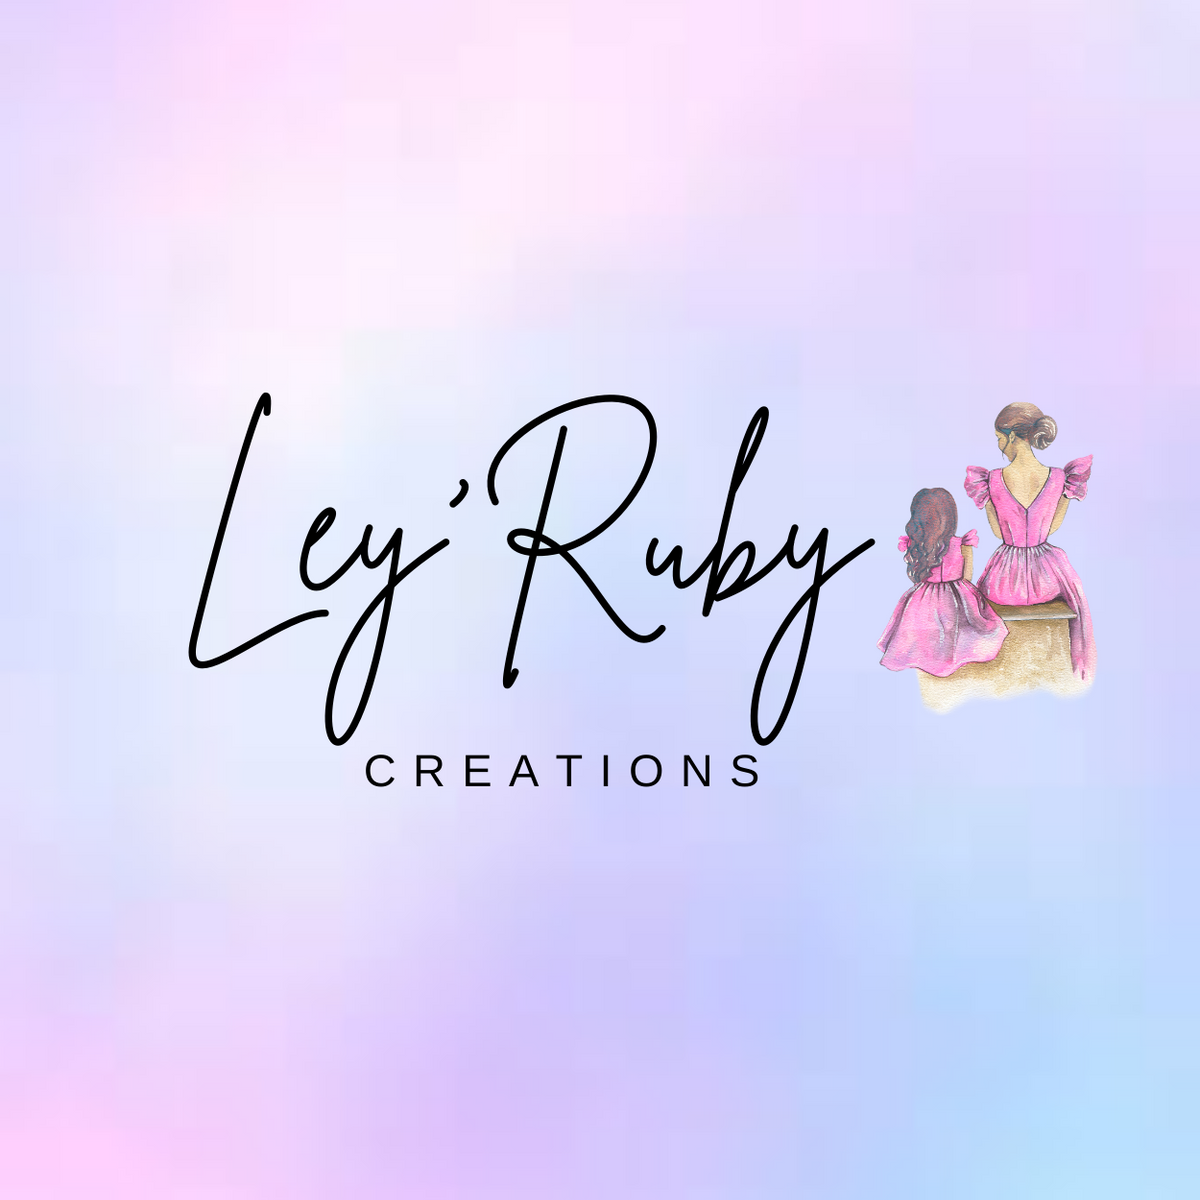 Leyrubycreations